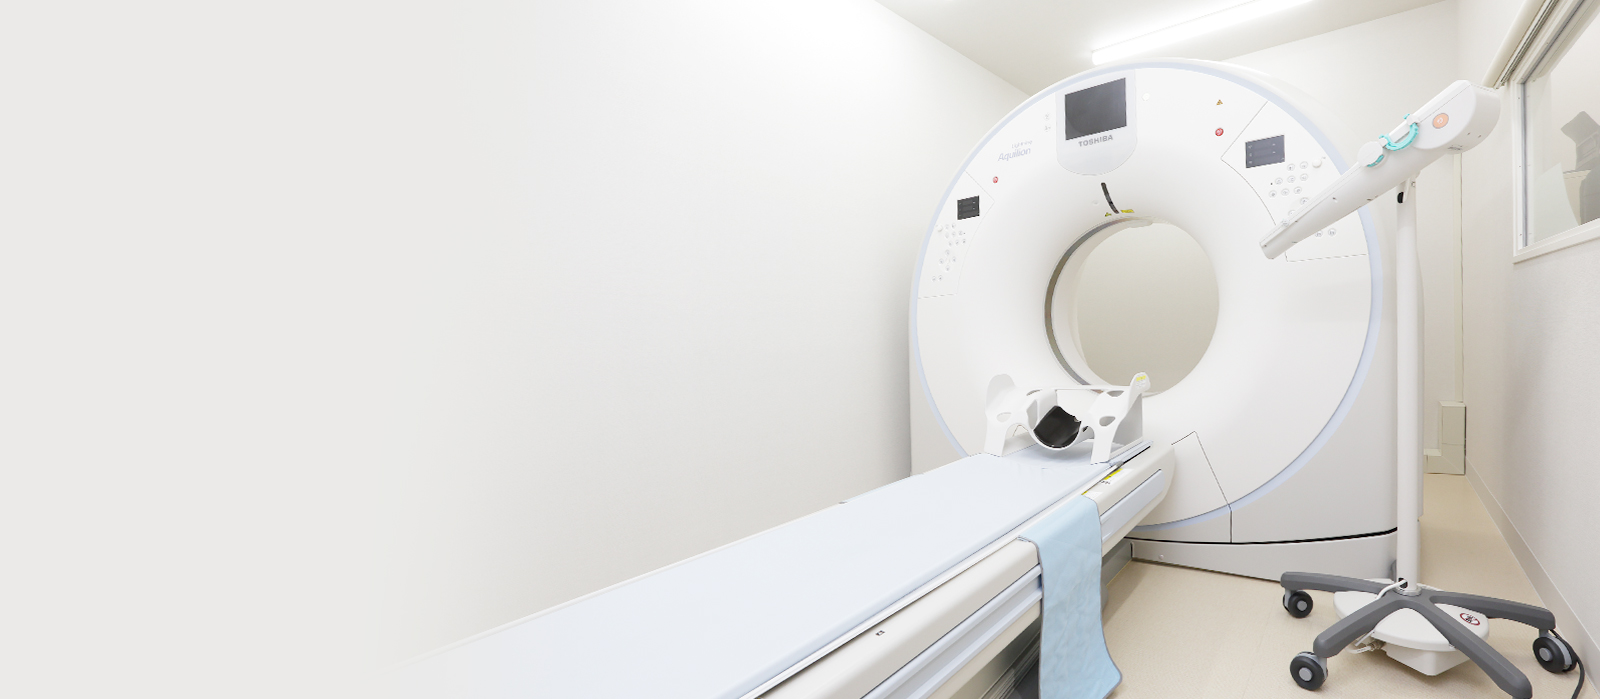 2人の専門医によるがん検査 院内に内視鏡やCT検査装置あり。がんや病気の早期発見・早期治療につとめています。